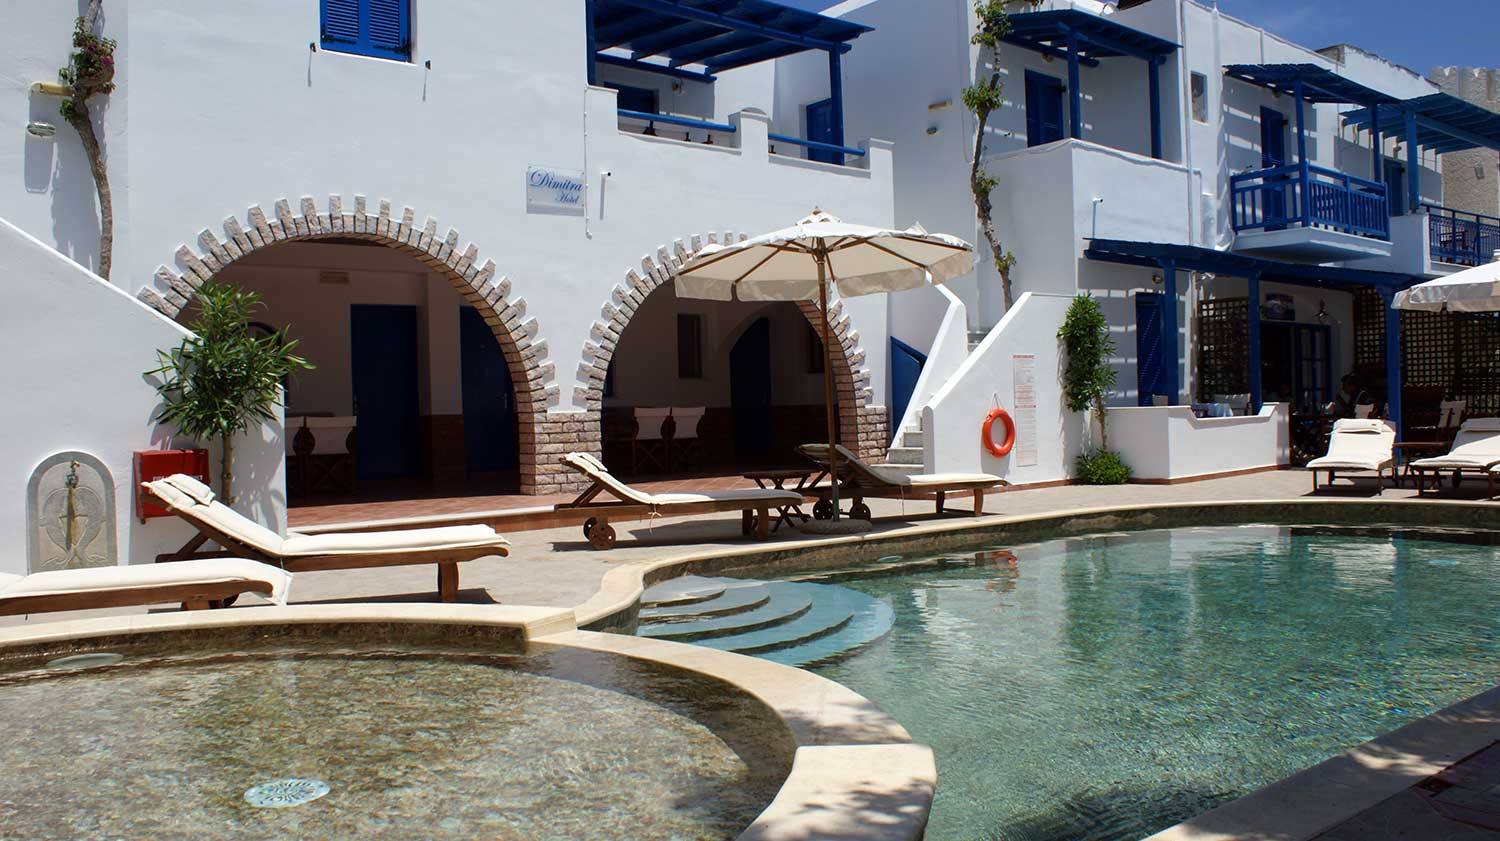 Dimitra Hotel on Naxos Island